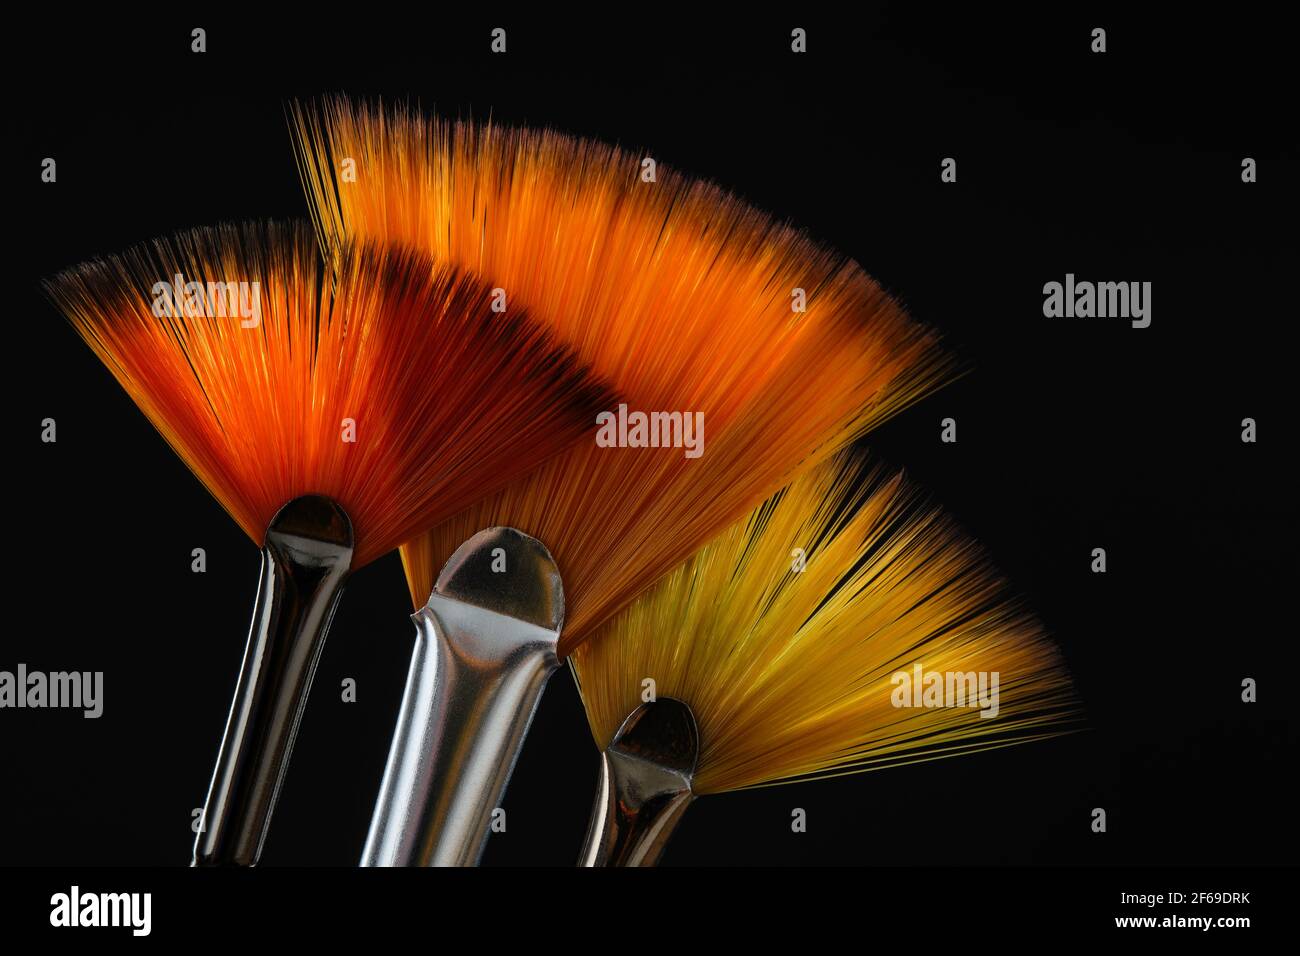 Trois pinceaux en forme de ventilateur. Brosses plates artistiques à cheveux orange pour l'aquarelle ou la peinture acrylique sur fond noir. Banque D'Images